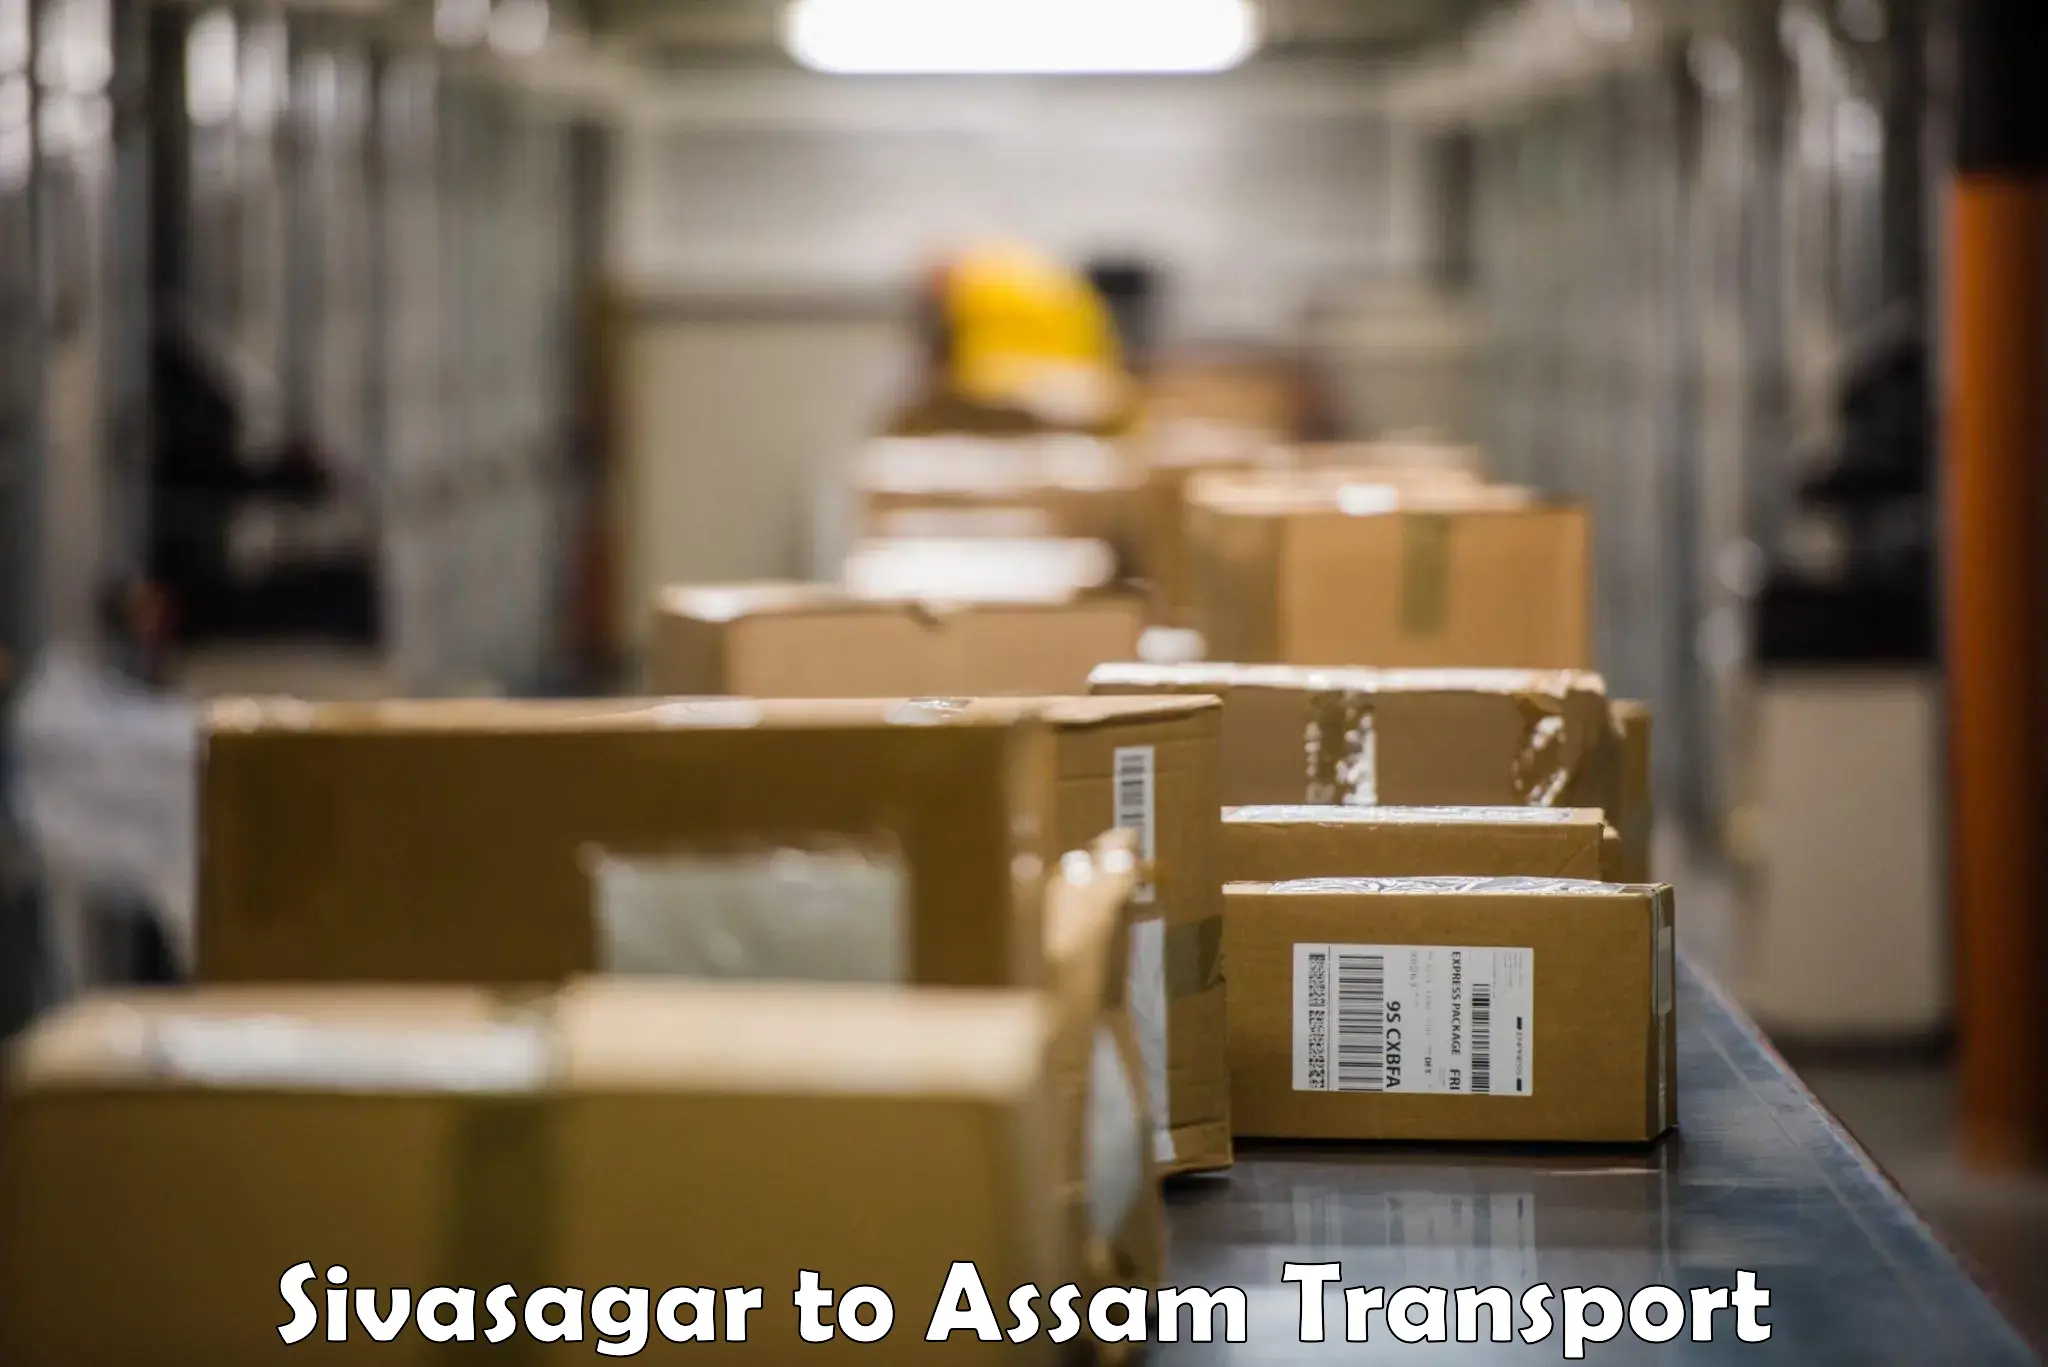 Shipping services Sivasagar to Silchar